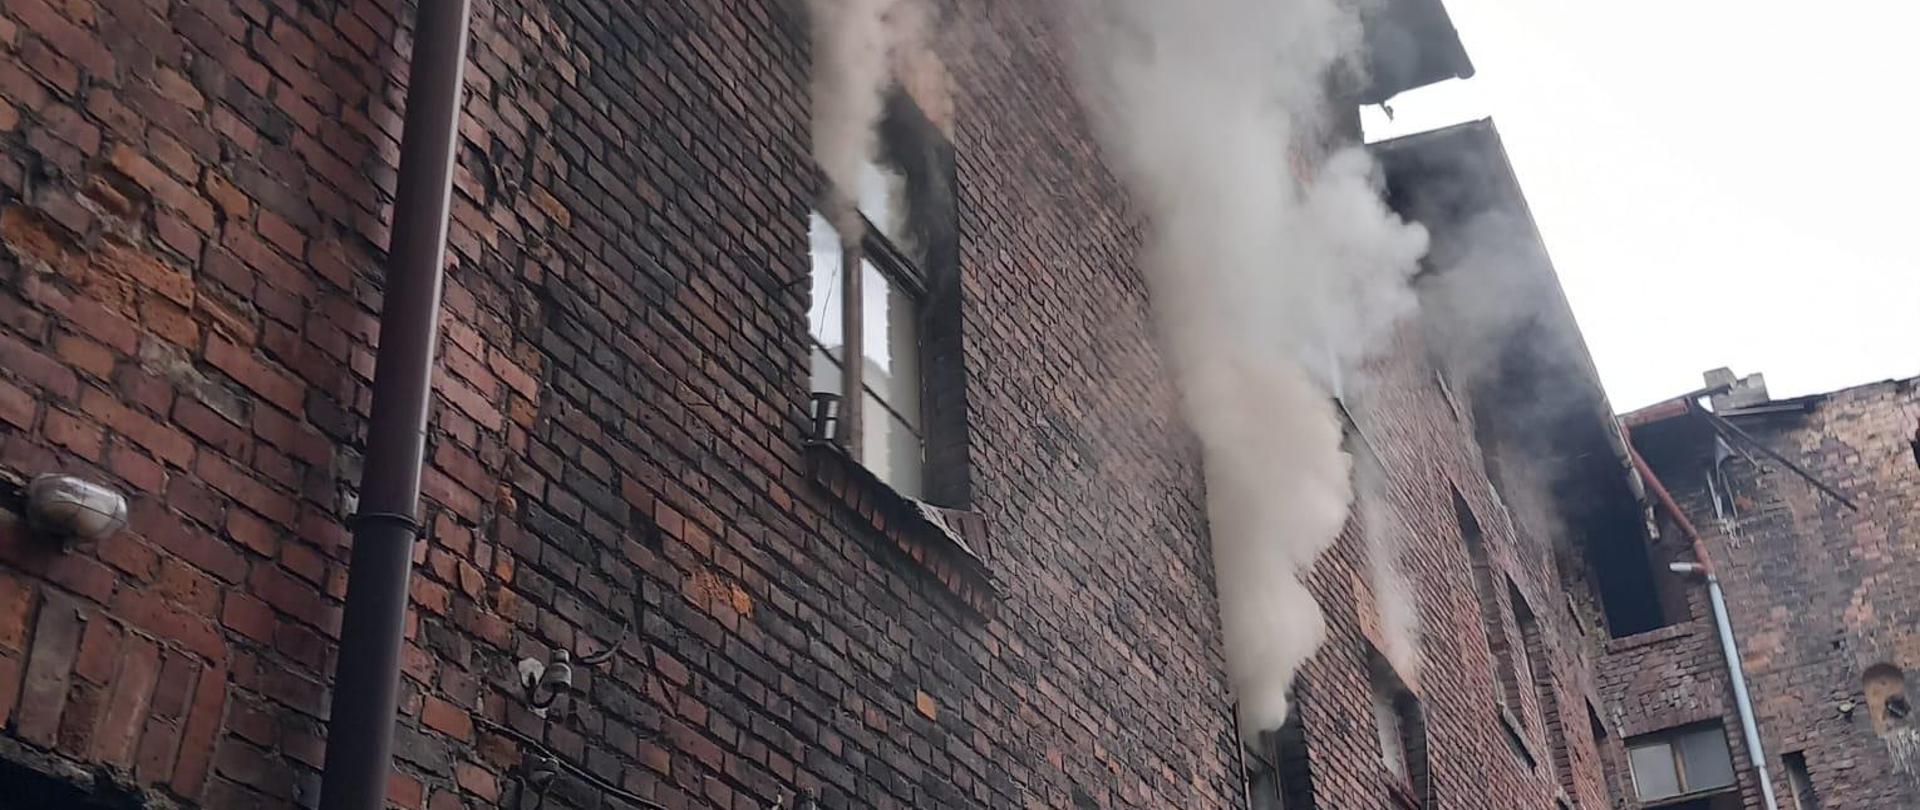 Na zdjęciu widoczny budynek, z okien na pierwszym piętrze wydobywa się dym